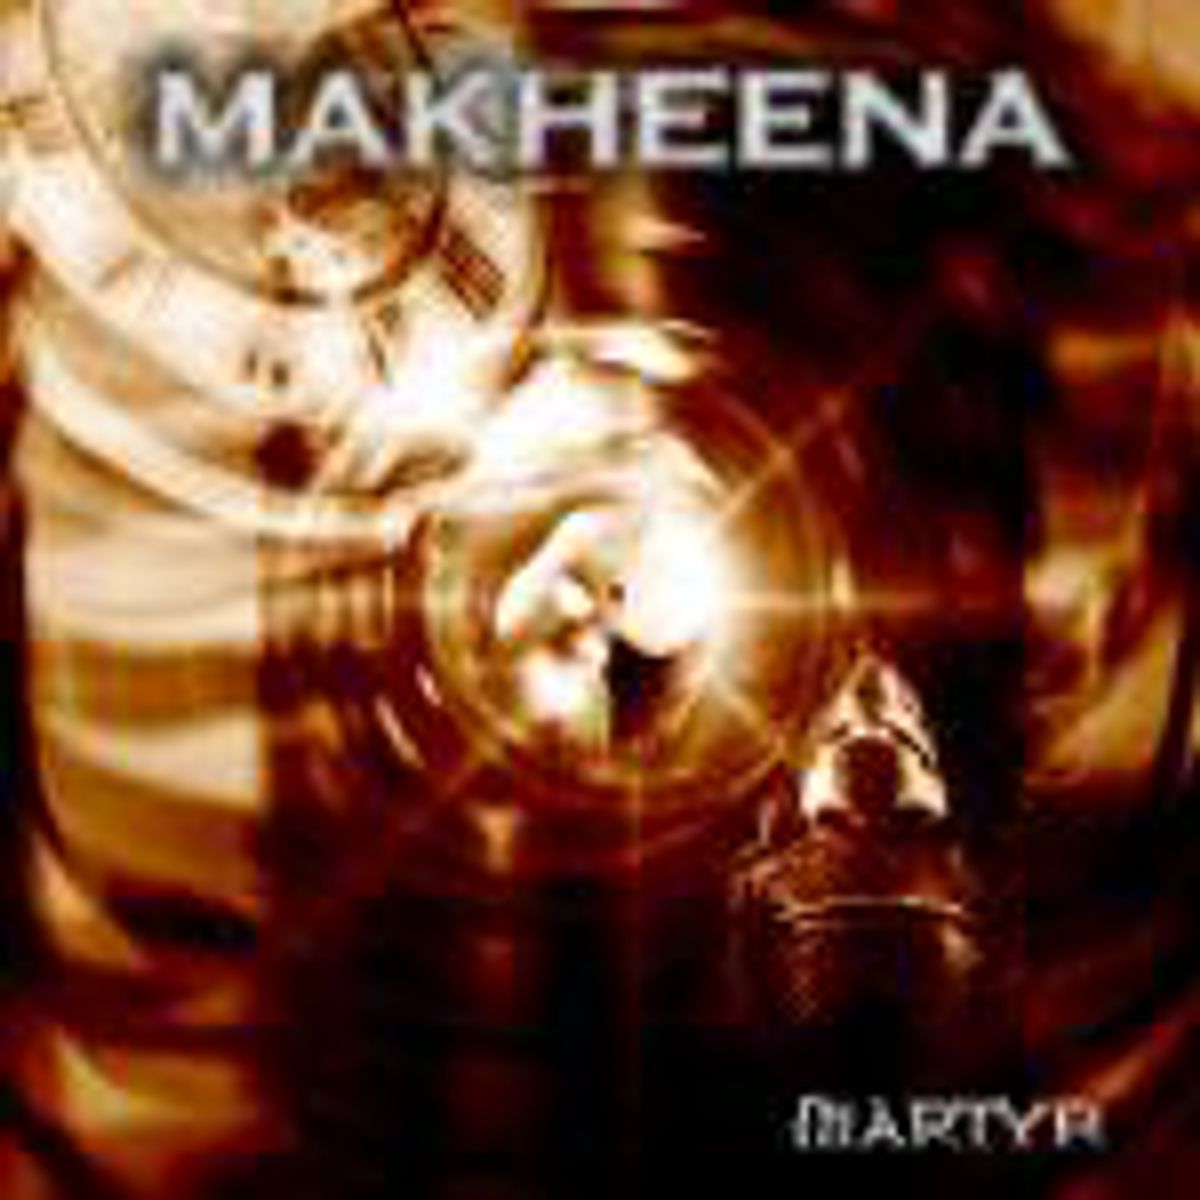 Makheena